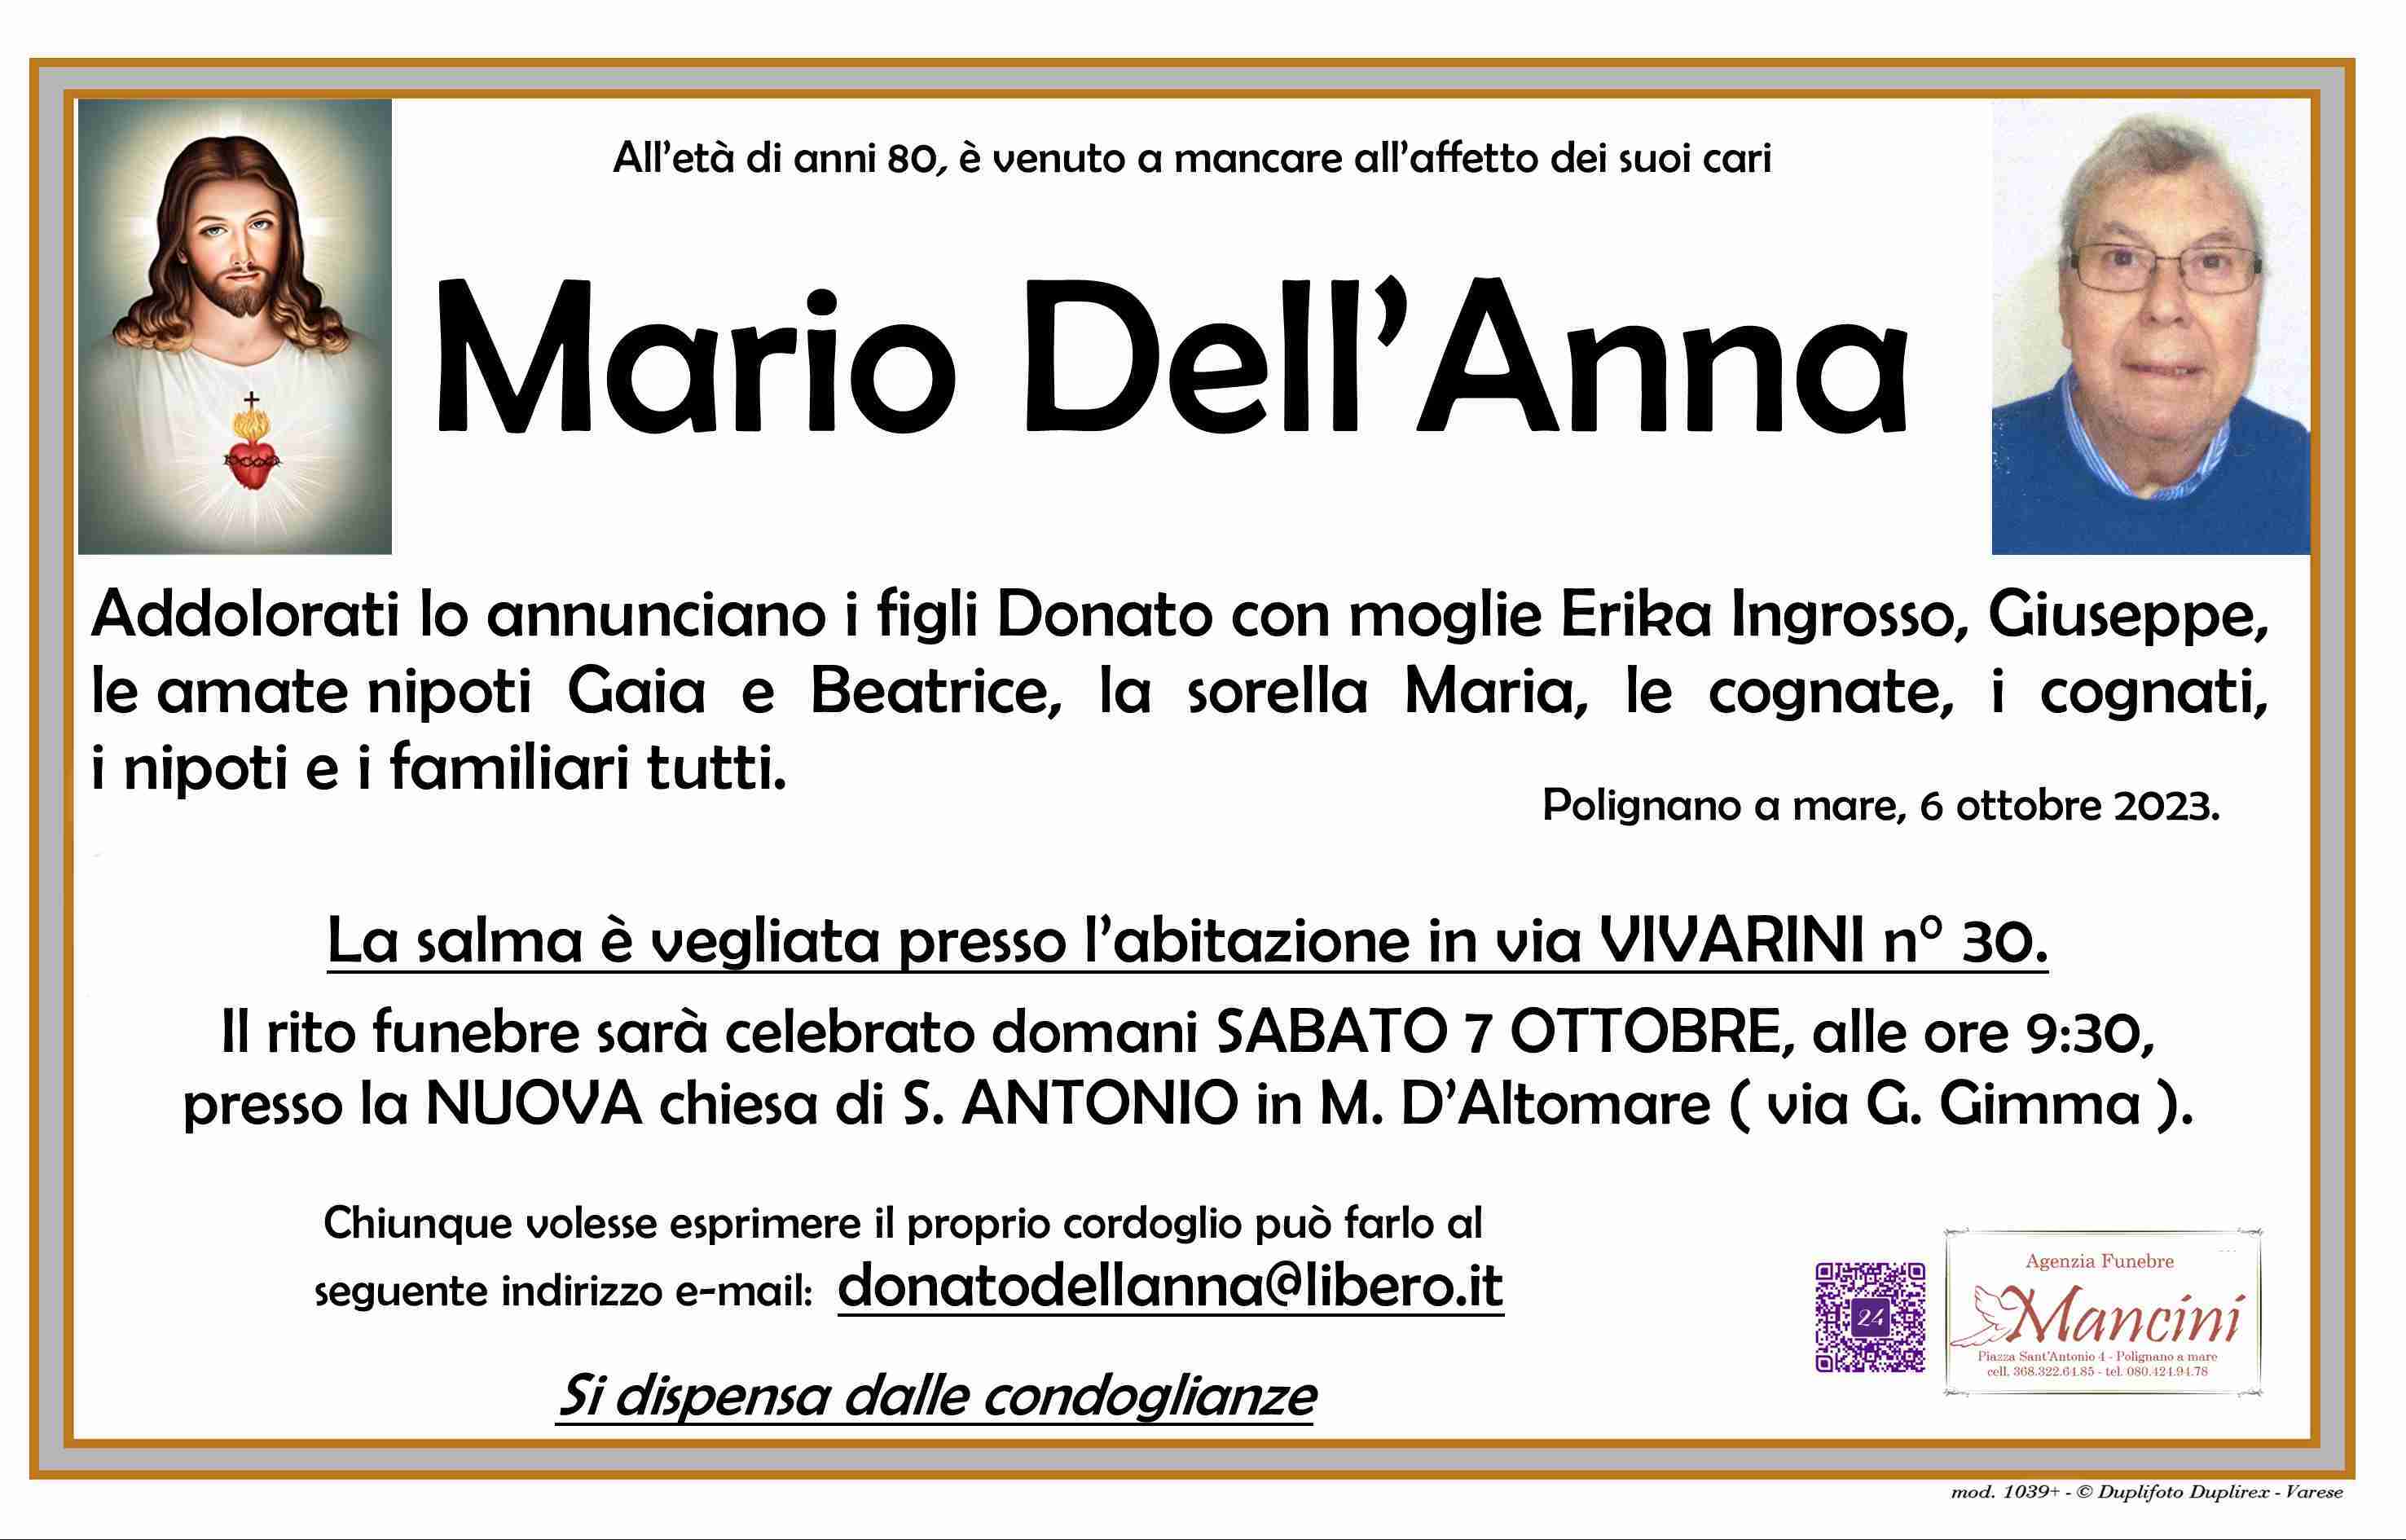 Mario Dell'Anna